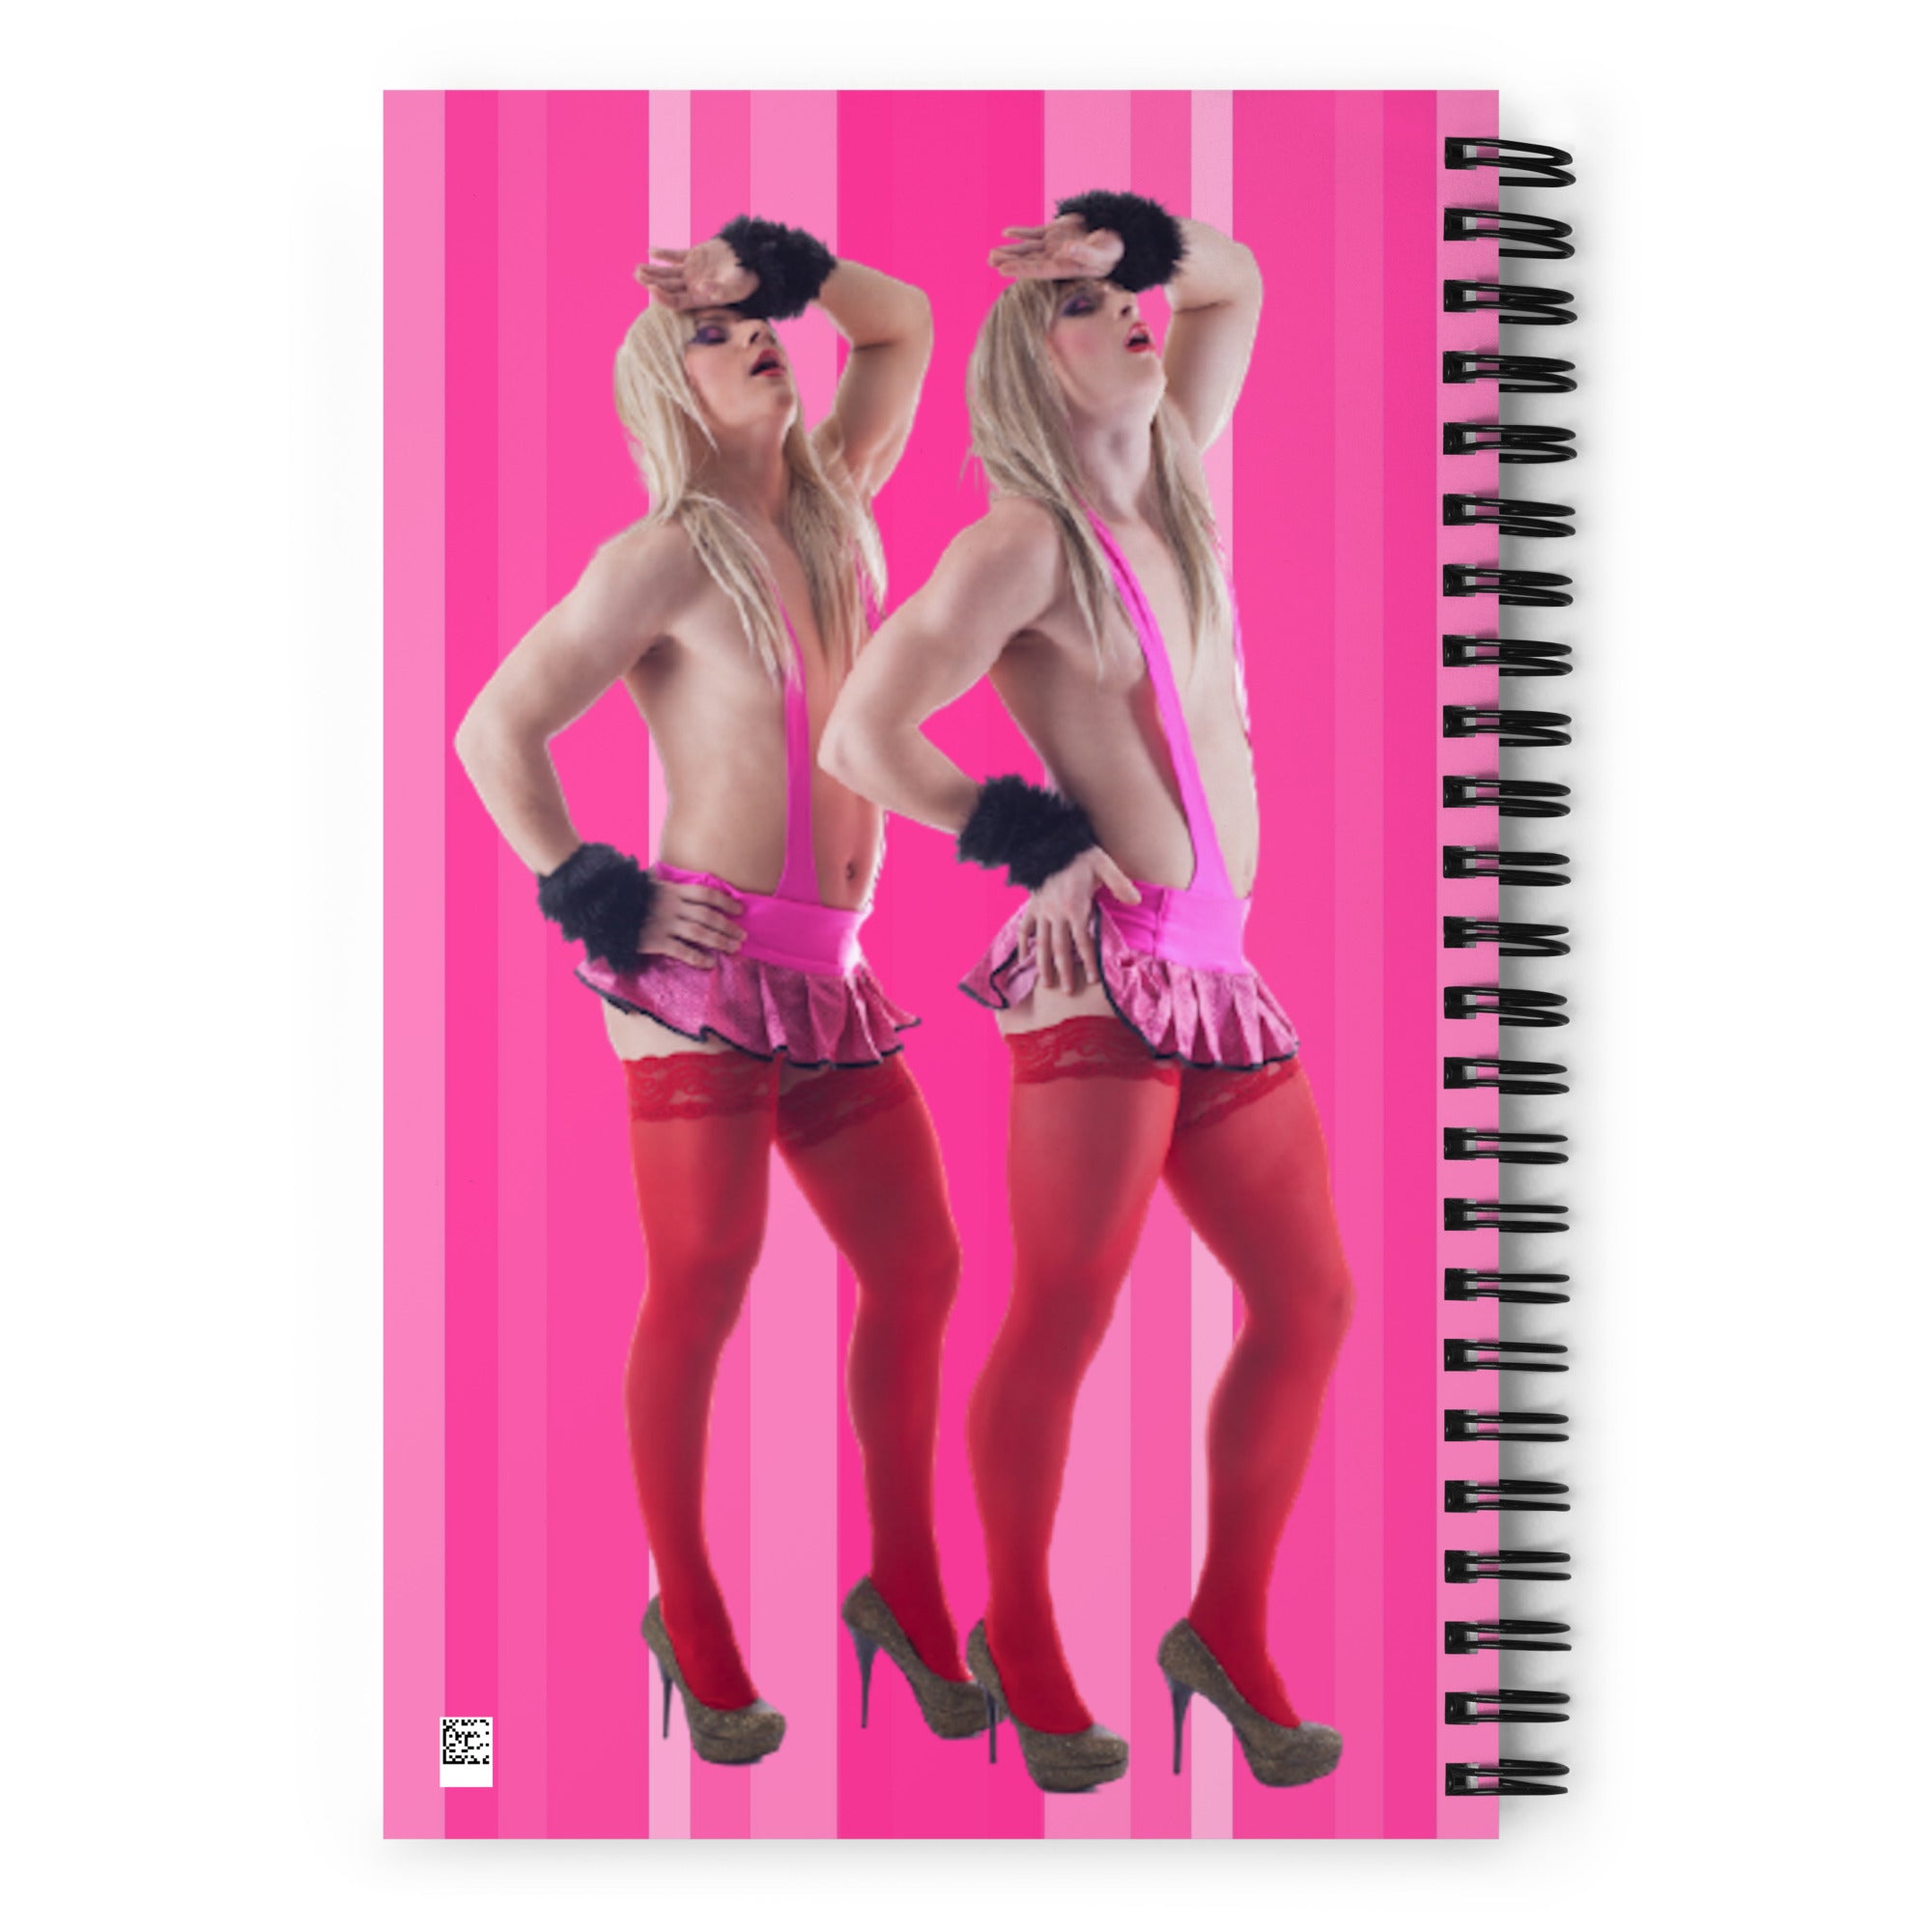 Pink Stripes Backgroud Gays Portrait Print, Sissy Illustration, LGBTQ Art Spiral Notebook Journal Gift Spiral Notebook